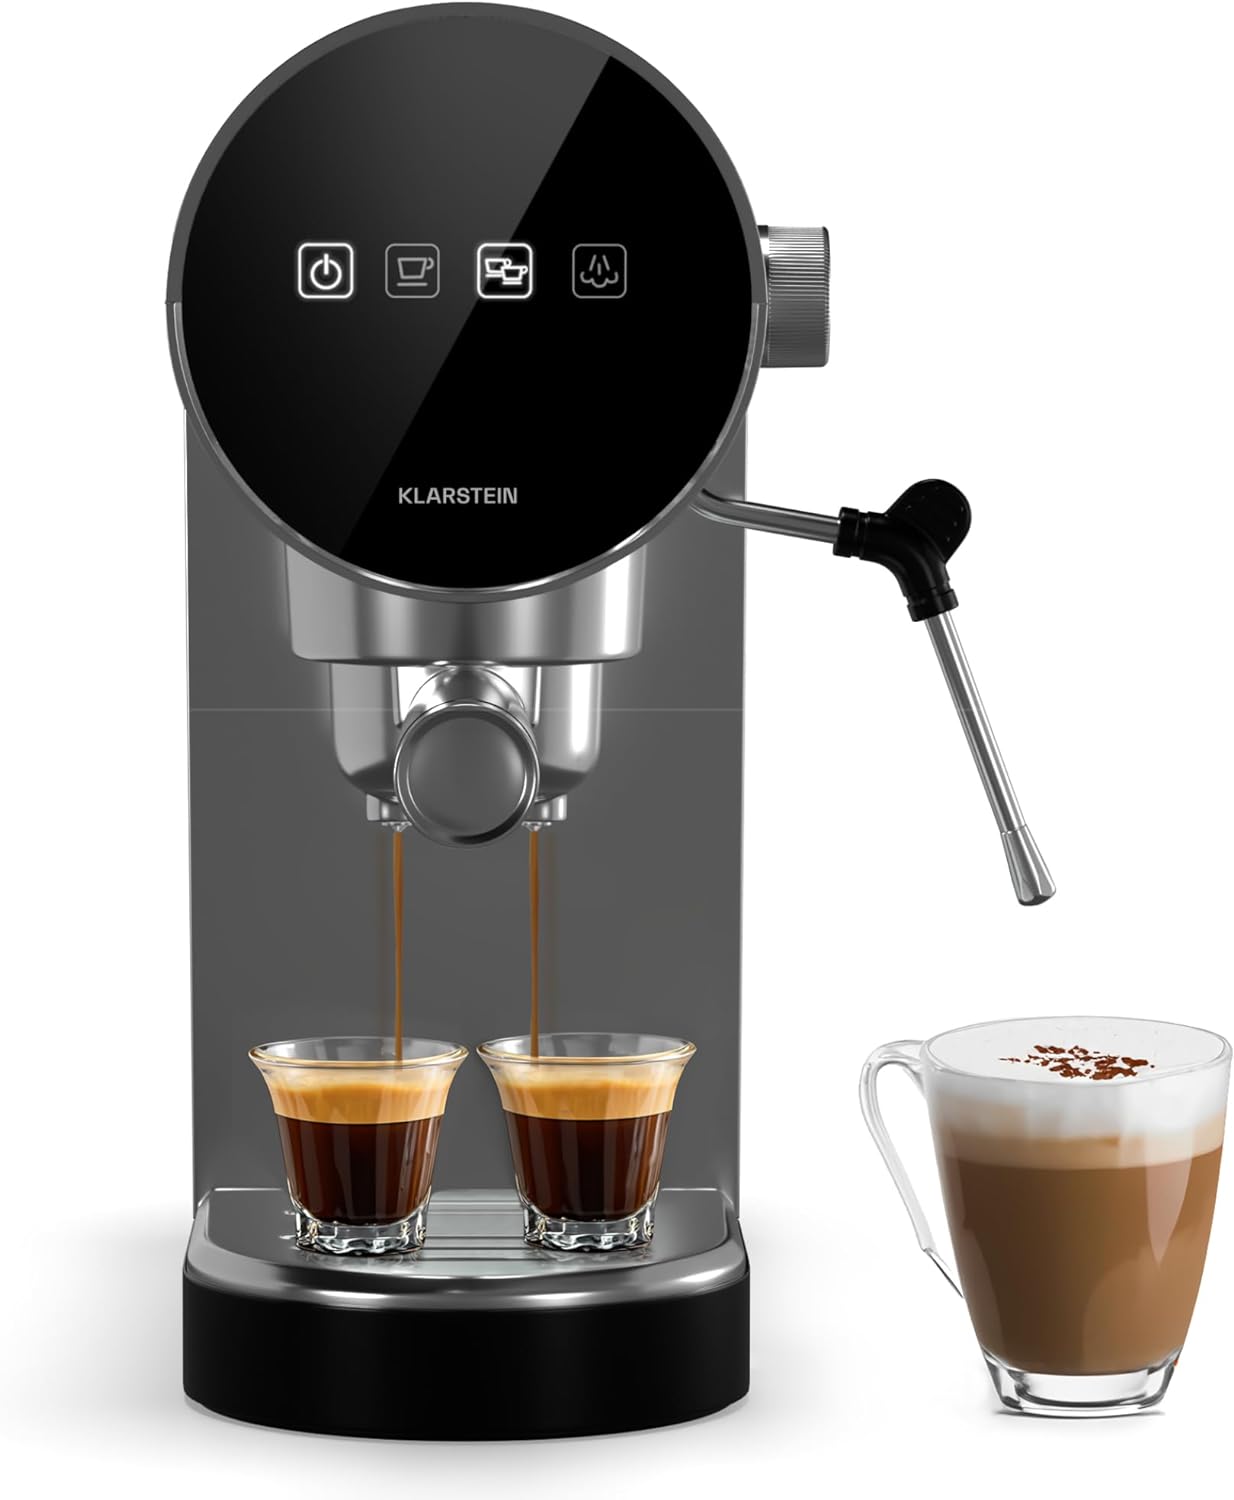 Klarstein Espresso Portafilter Machine with Milk Frother, 0.9 L Retro Mini Espresso Machine With Portafilter, 1360 Watt Small Coffee Machine, Coffee Machine for Cappuccino, Latte & Macchiato